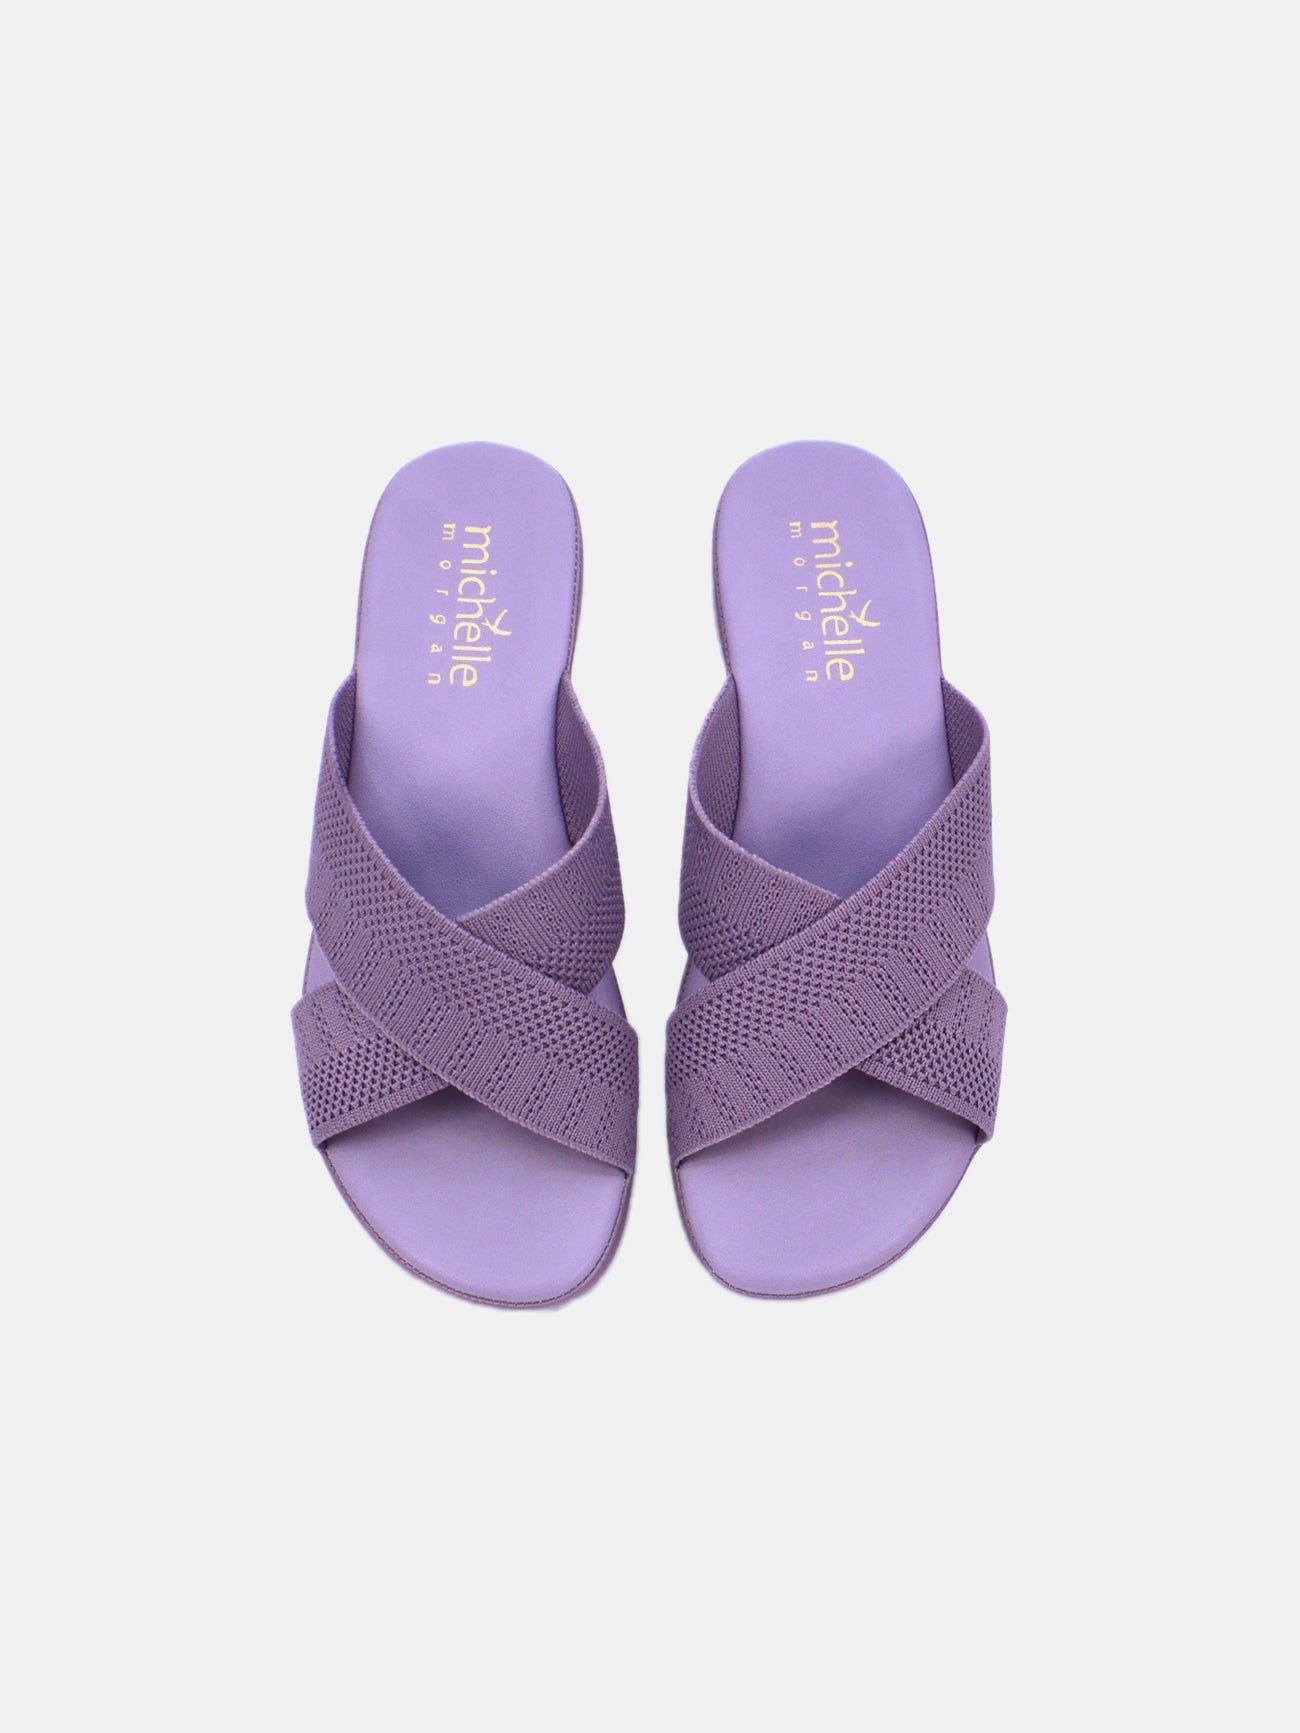 Michelle Morgan 214RJL16 Women's Heeled Sandals #color_Piurple